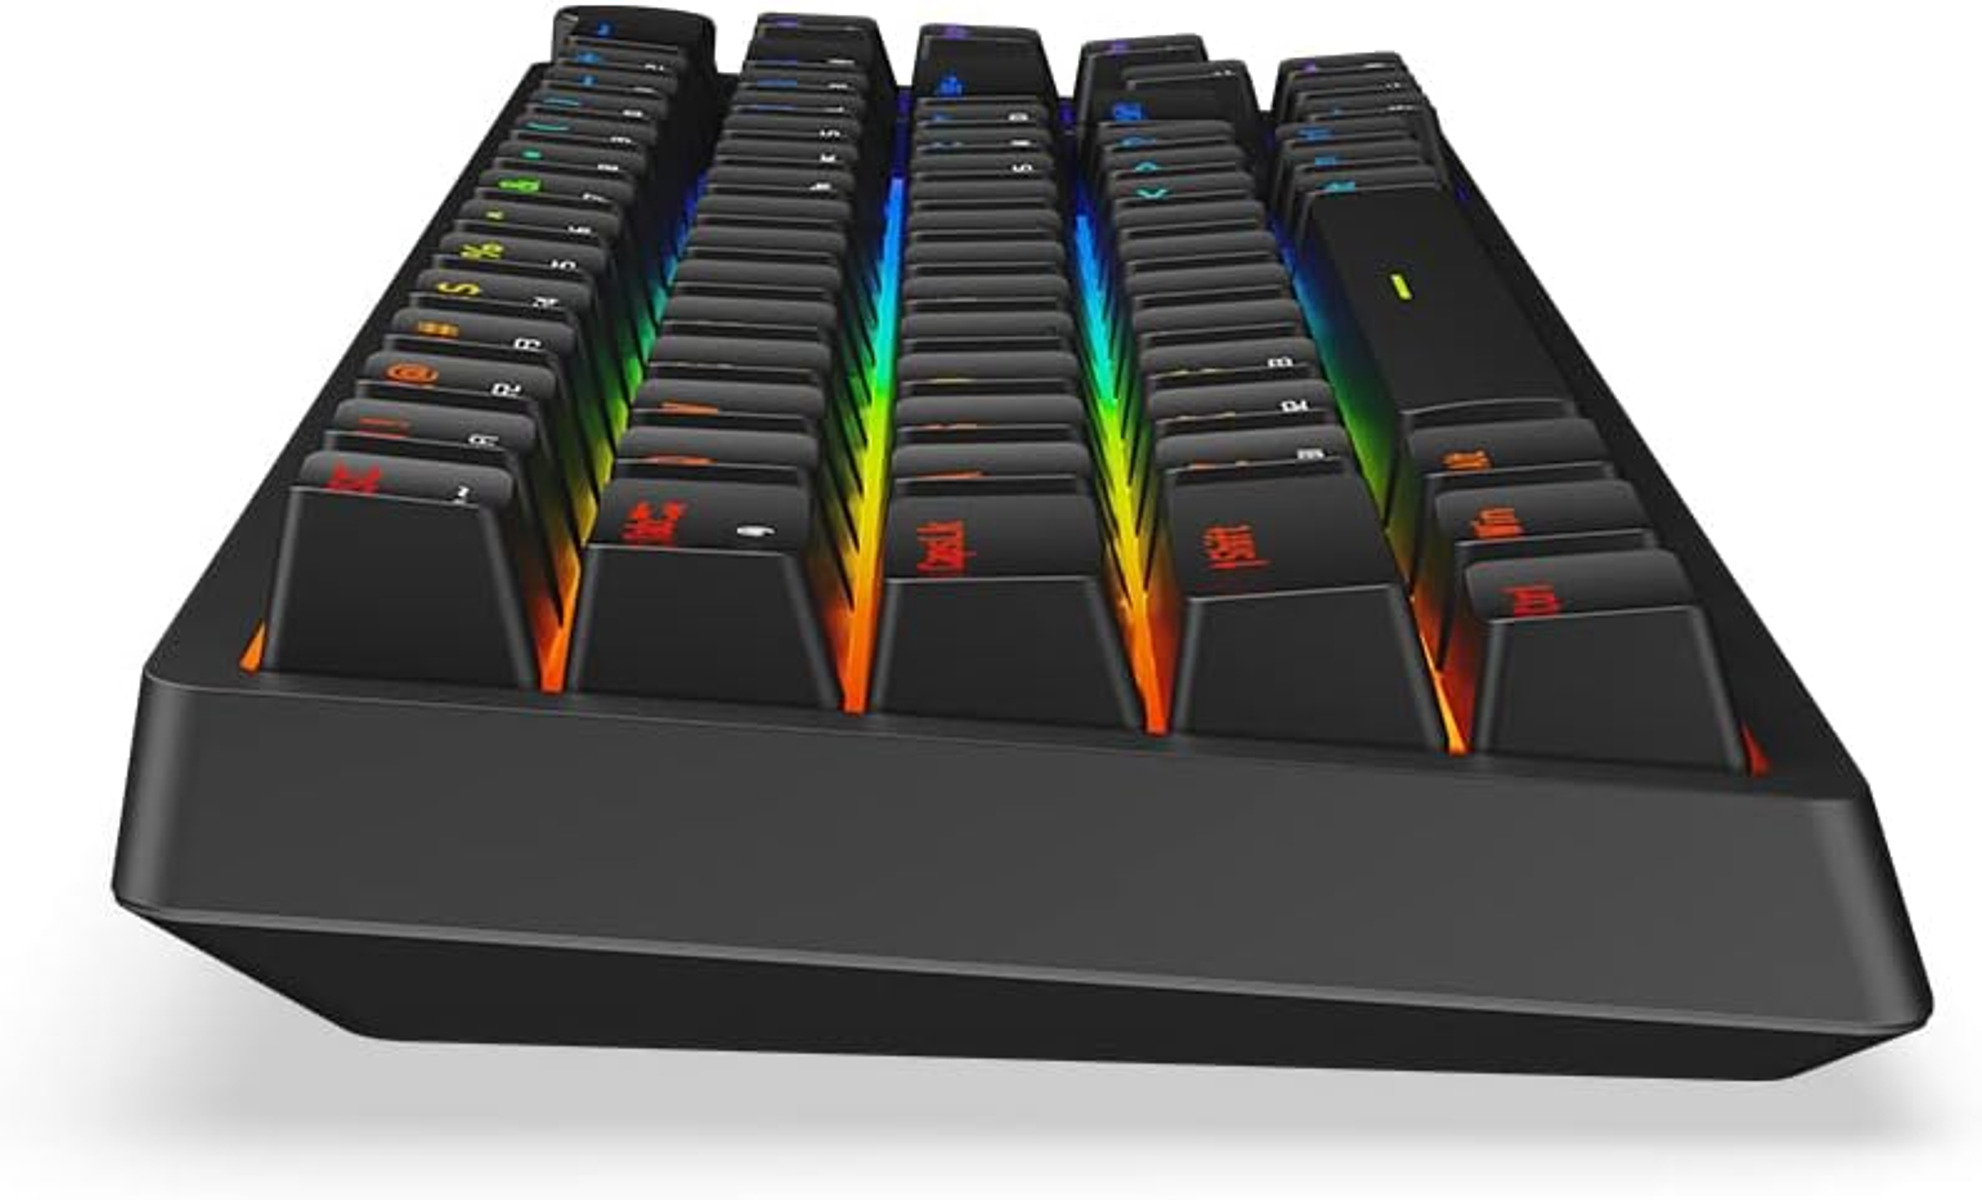 KRUX Gaming Tastatur KRX0125,